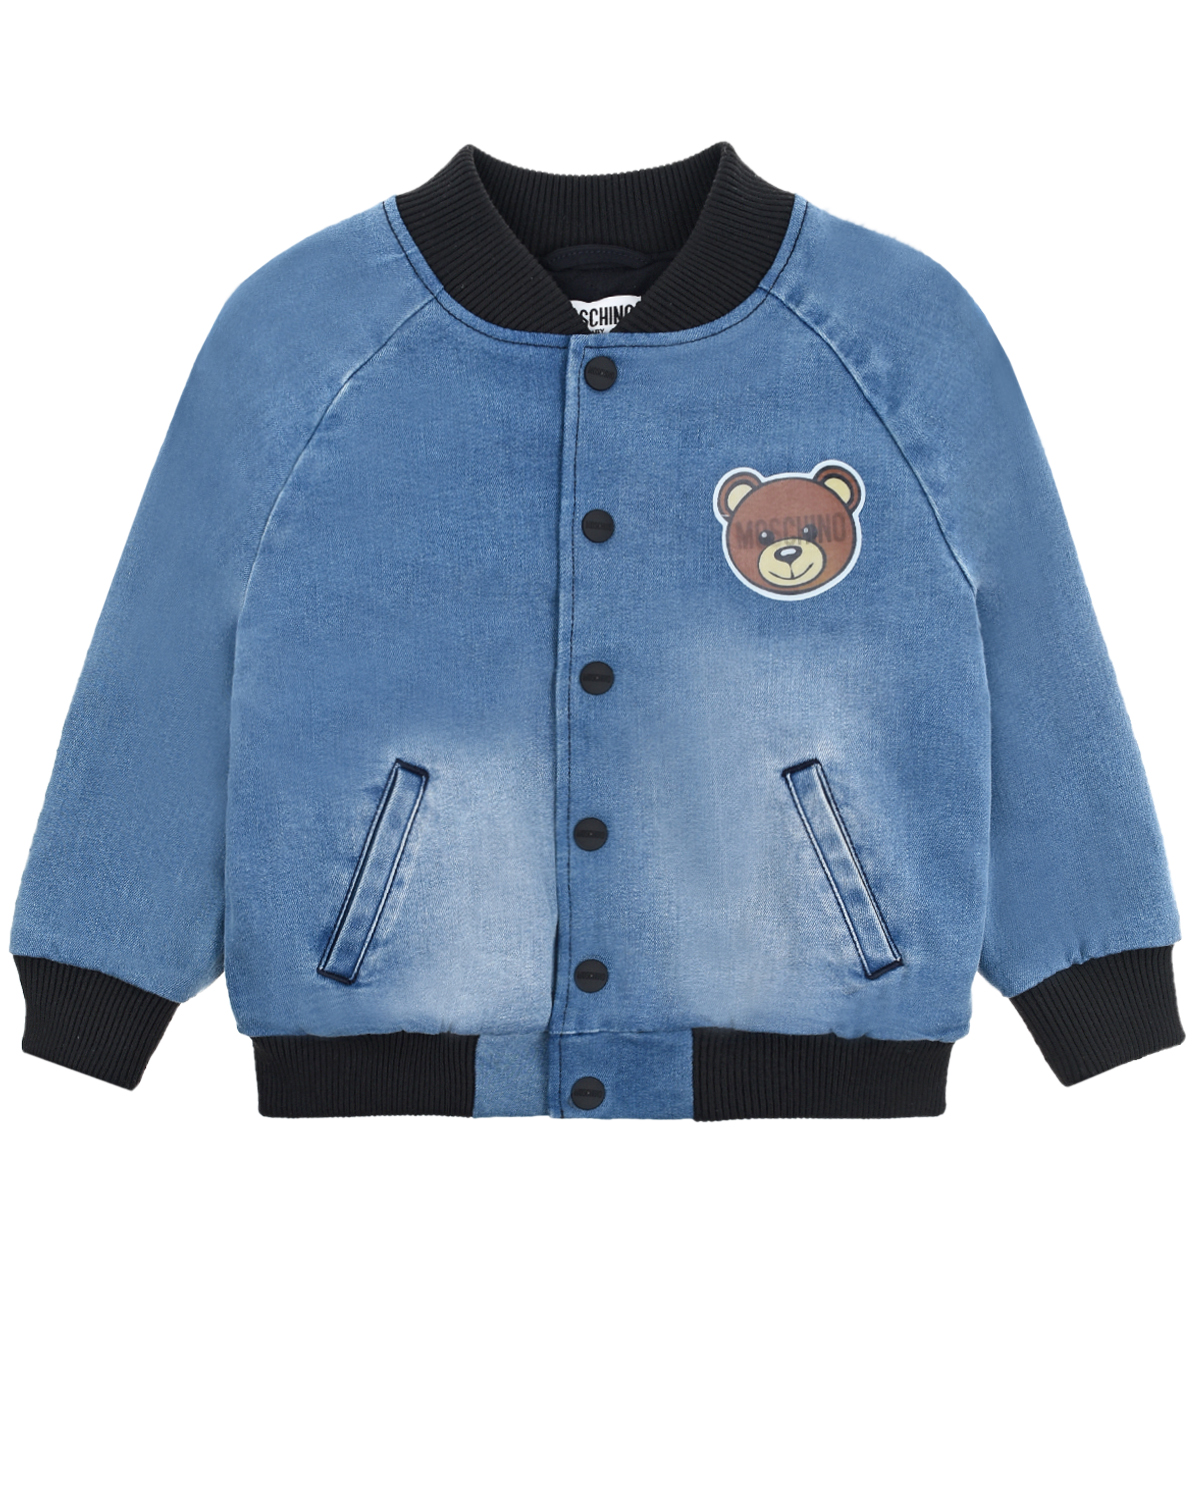 Джинсовая куртка-бомбер Moschino детская, размер 92, цвет голубой - фото 1